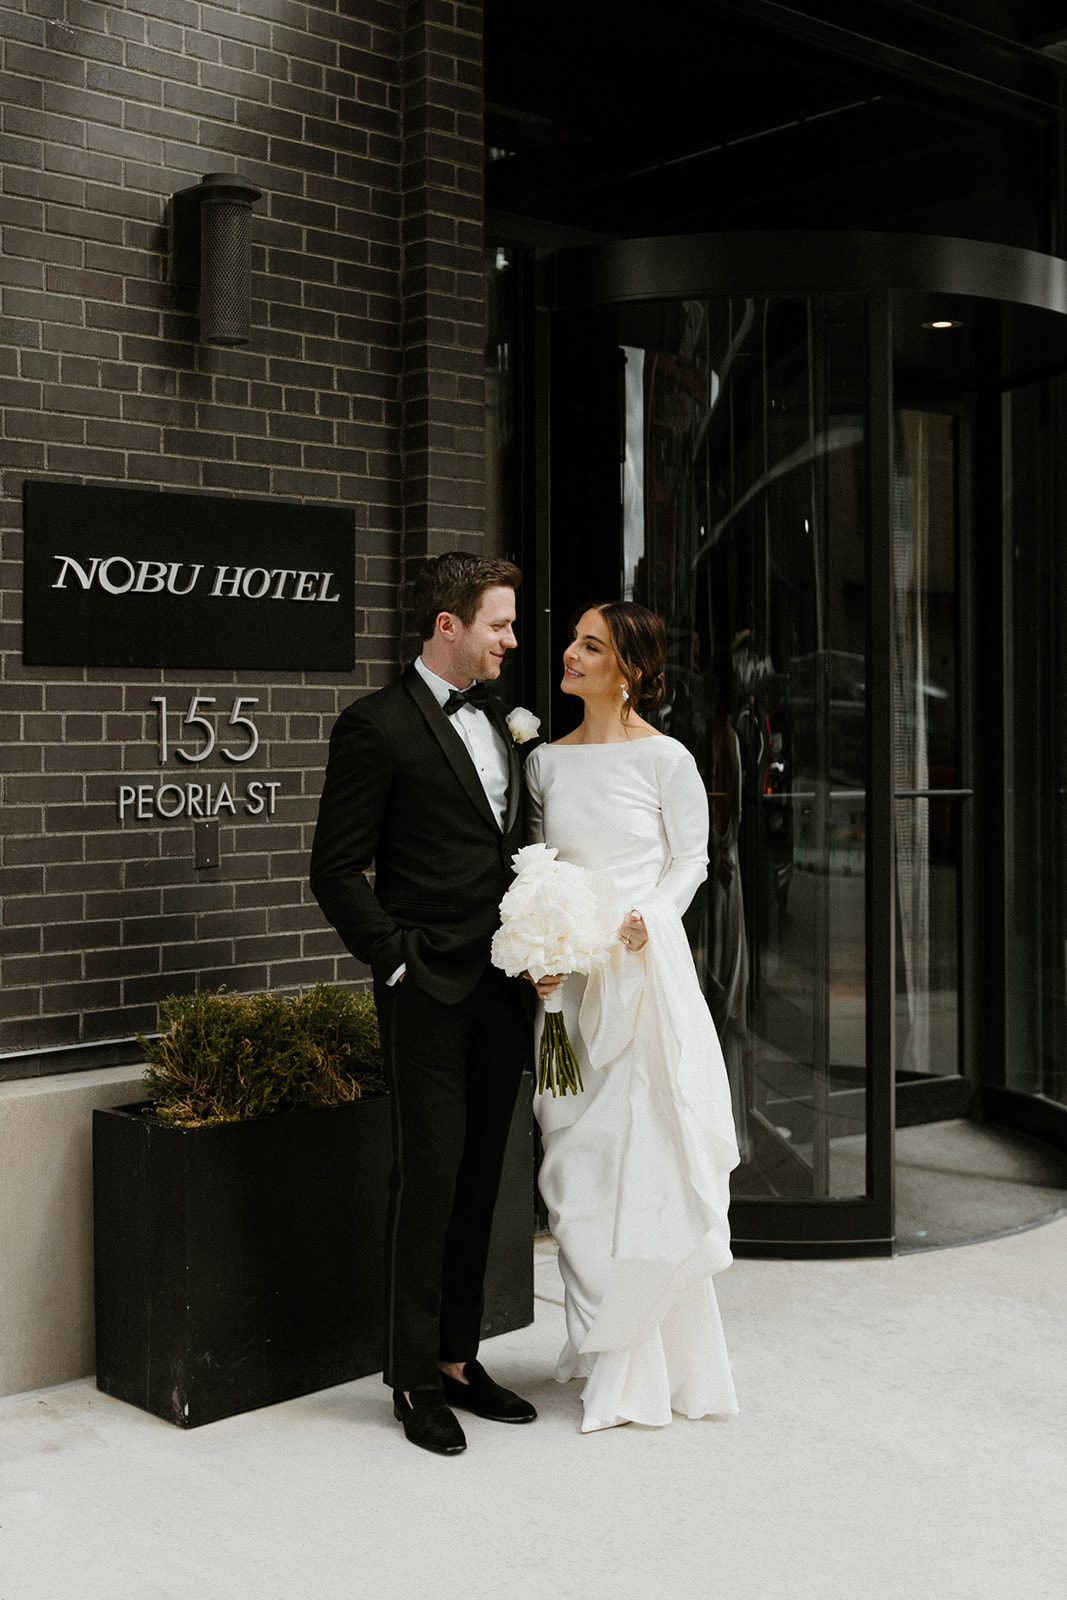 10 Modern + Luxurious Chicago Wedding Ideas